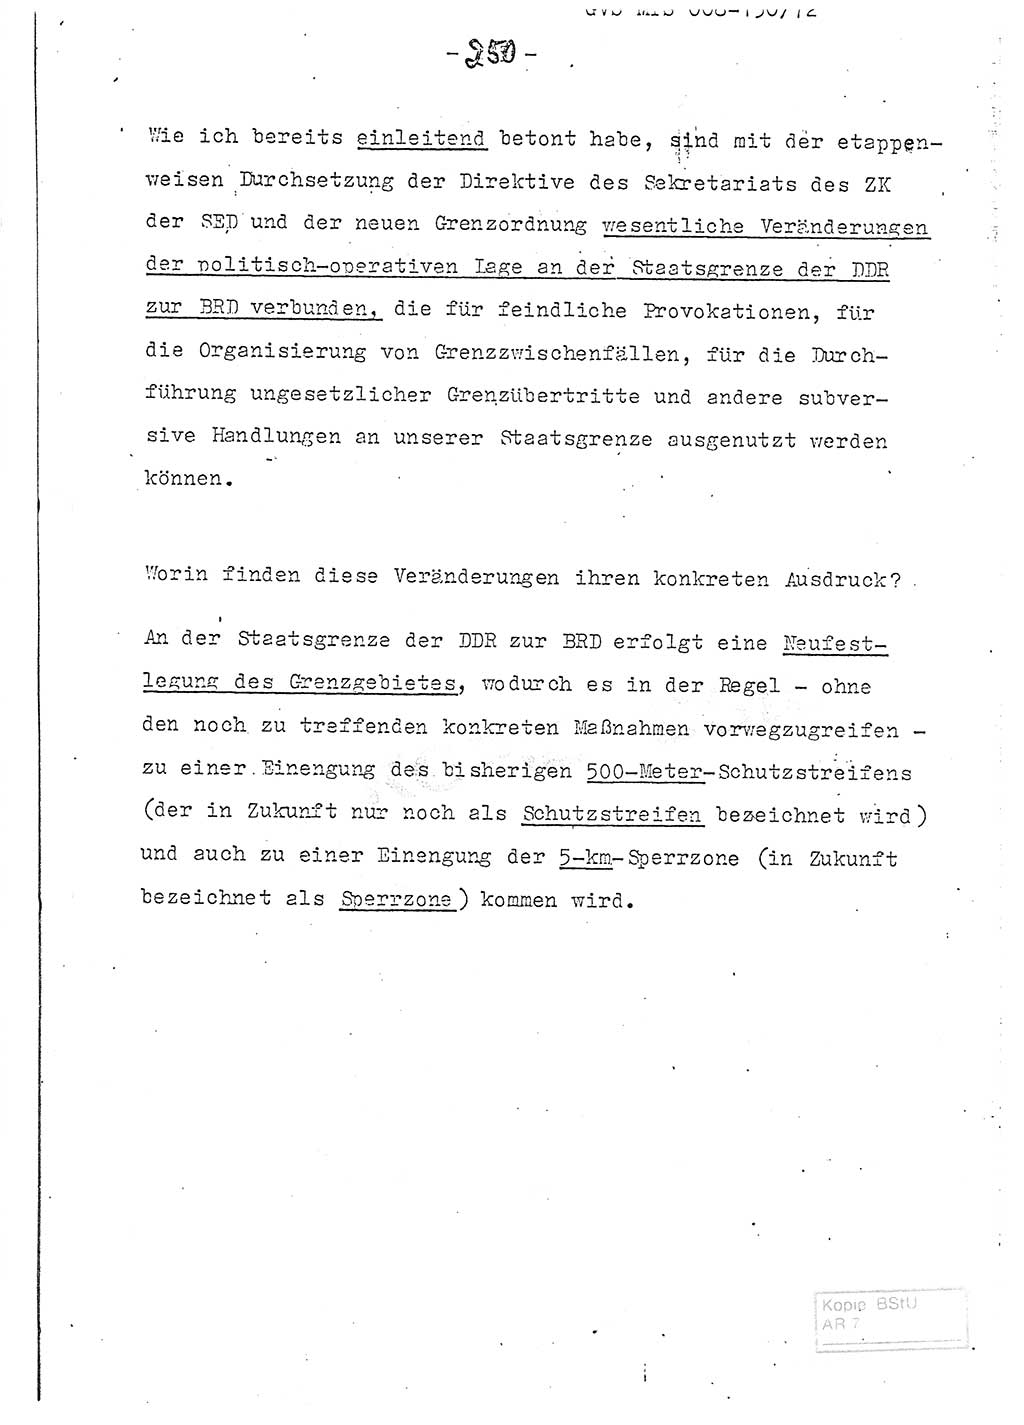 Referat (Entwurf) des Genossen Minister (Generaloberst Erich Mielke) auf der Dienstkonferenz 1972, Ministerium für Staatssicherheit (MfS) [Deutsche Demokratische Republik (DDR)], Der Minister, Geheime Verschlußsache (GVS) 008-150/72, Berlin 25.2.1972, Seite 250 (Ref. Entw. DK MfS DDR Min. GVS 008-150/72 1972, S. 250)